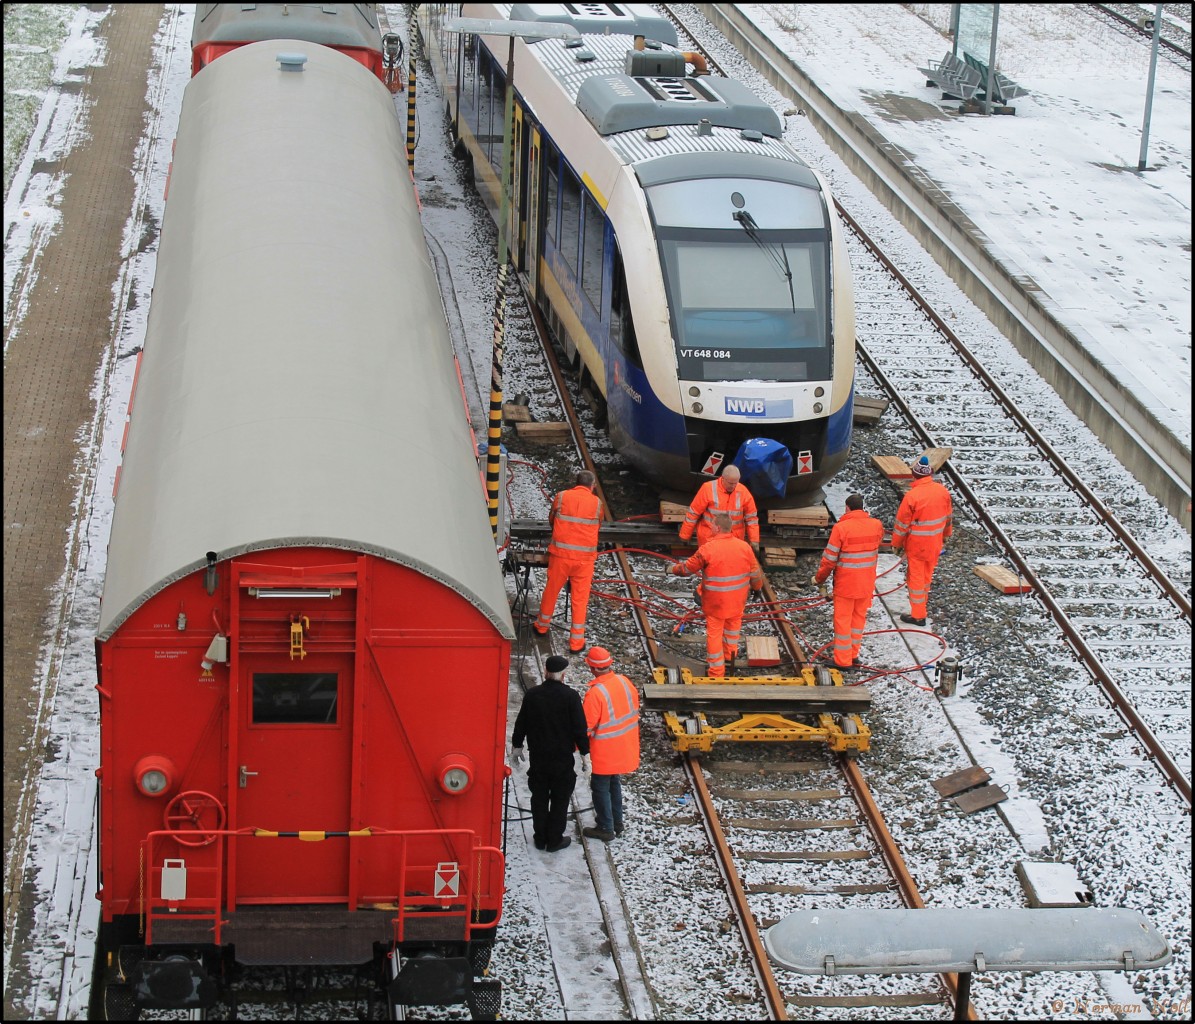 Netz Notfalltechnik und Entgleister VT 648 084 der Nord-West-Bahn auf Bf Wilhelmshaven.
25/01/2014